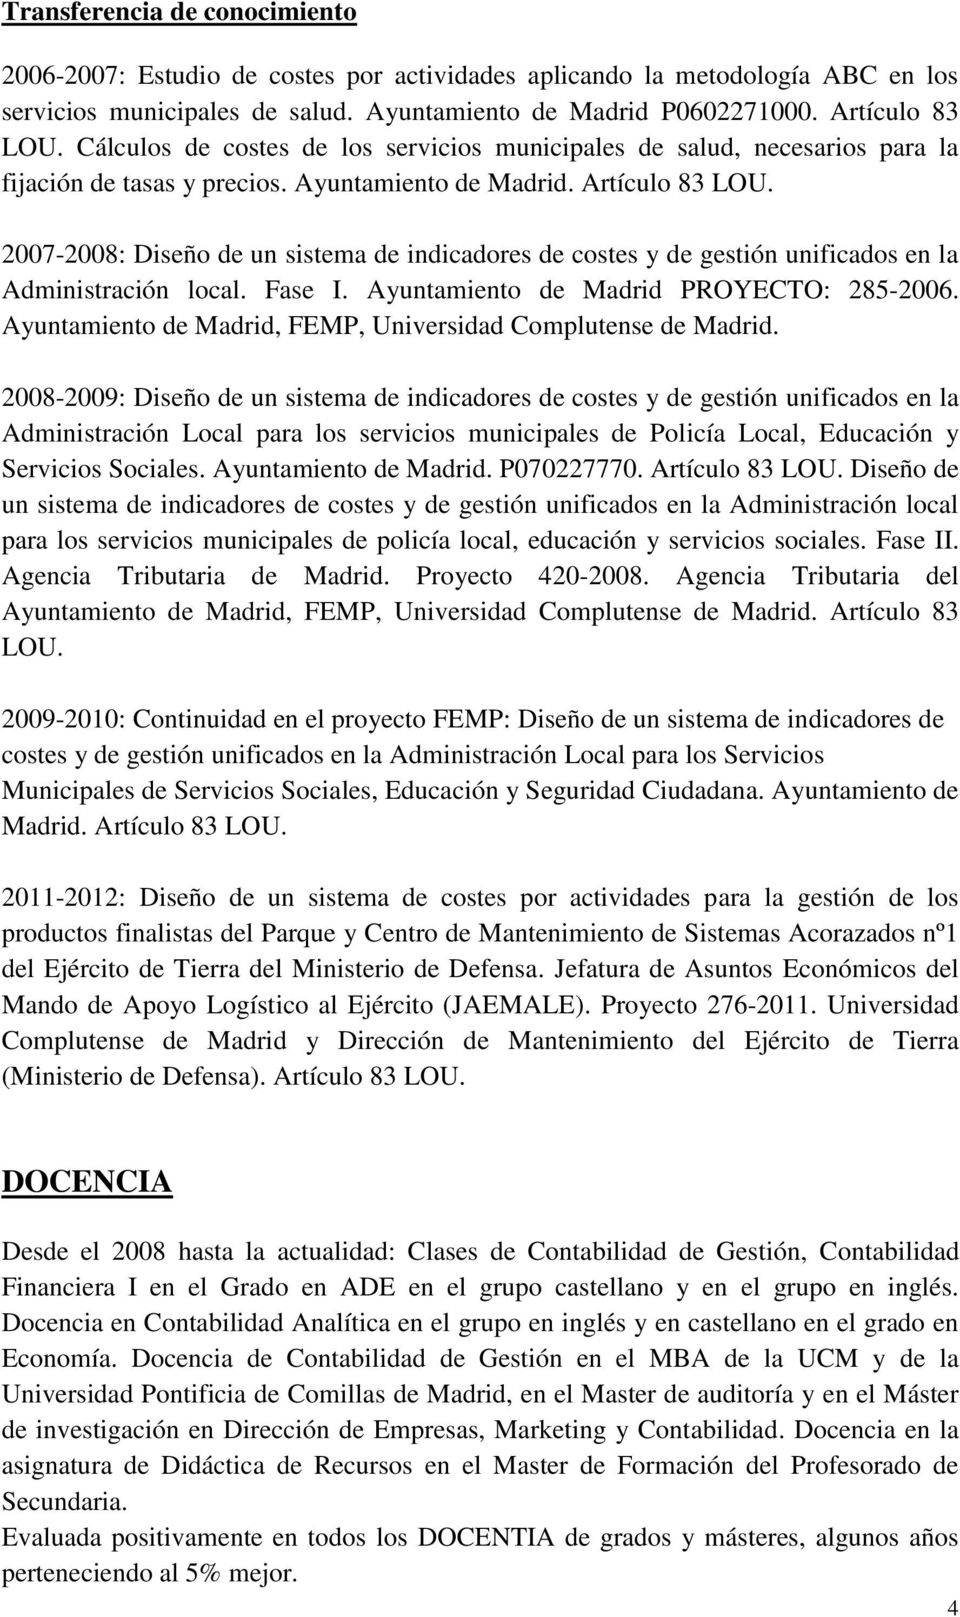 2007-2008: Diseño de un sistema de indicadores de costes y de gestión unificados en la Administración local. Fase I. Ayuntamiento de Madrid PROYECTO: 285-2006.